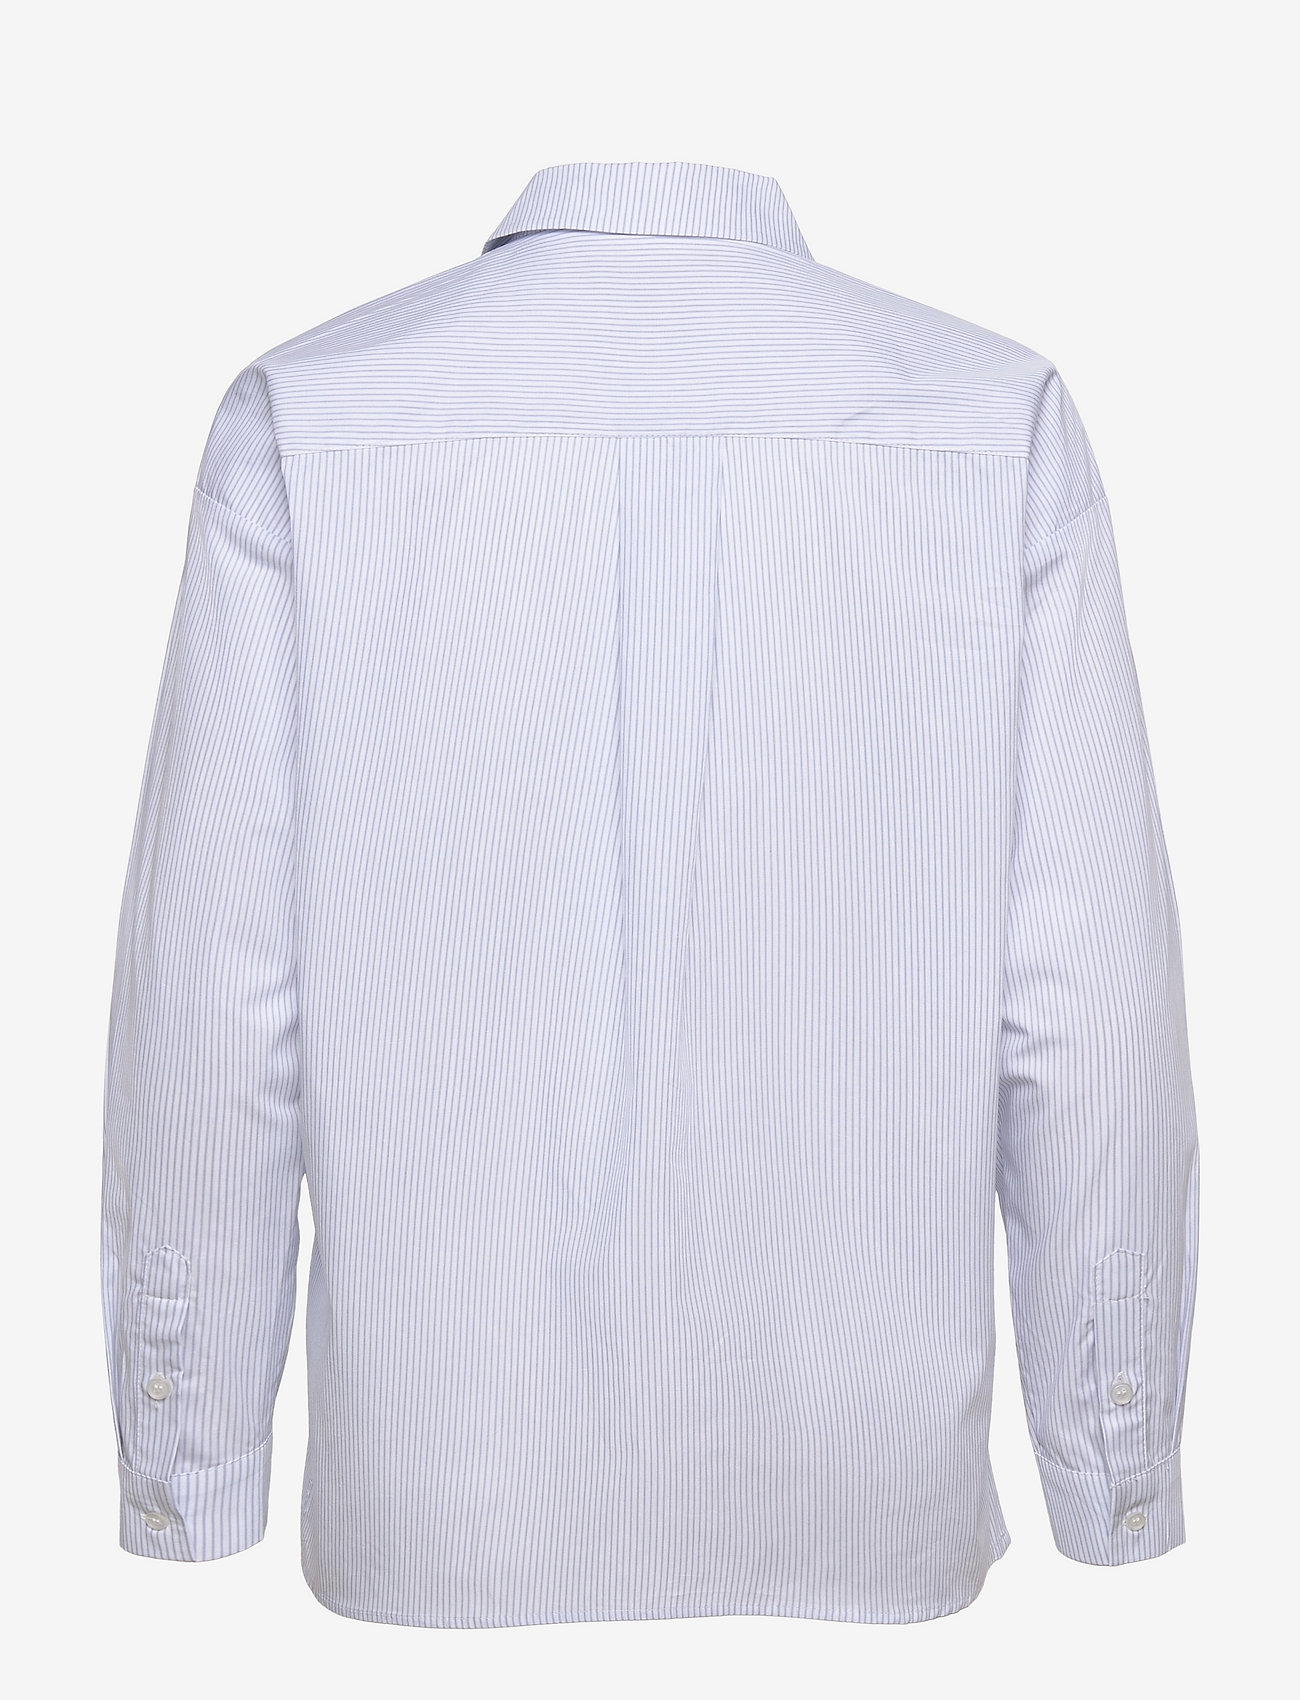 My Essential Wardrobe - 03 THE SHIRT - marškiniai ilgomis rankovėmis - light blue striped - 1